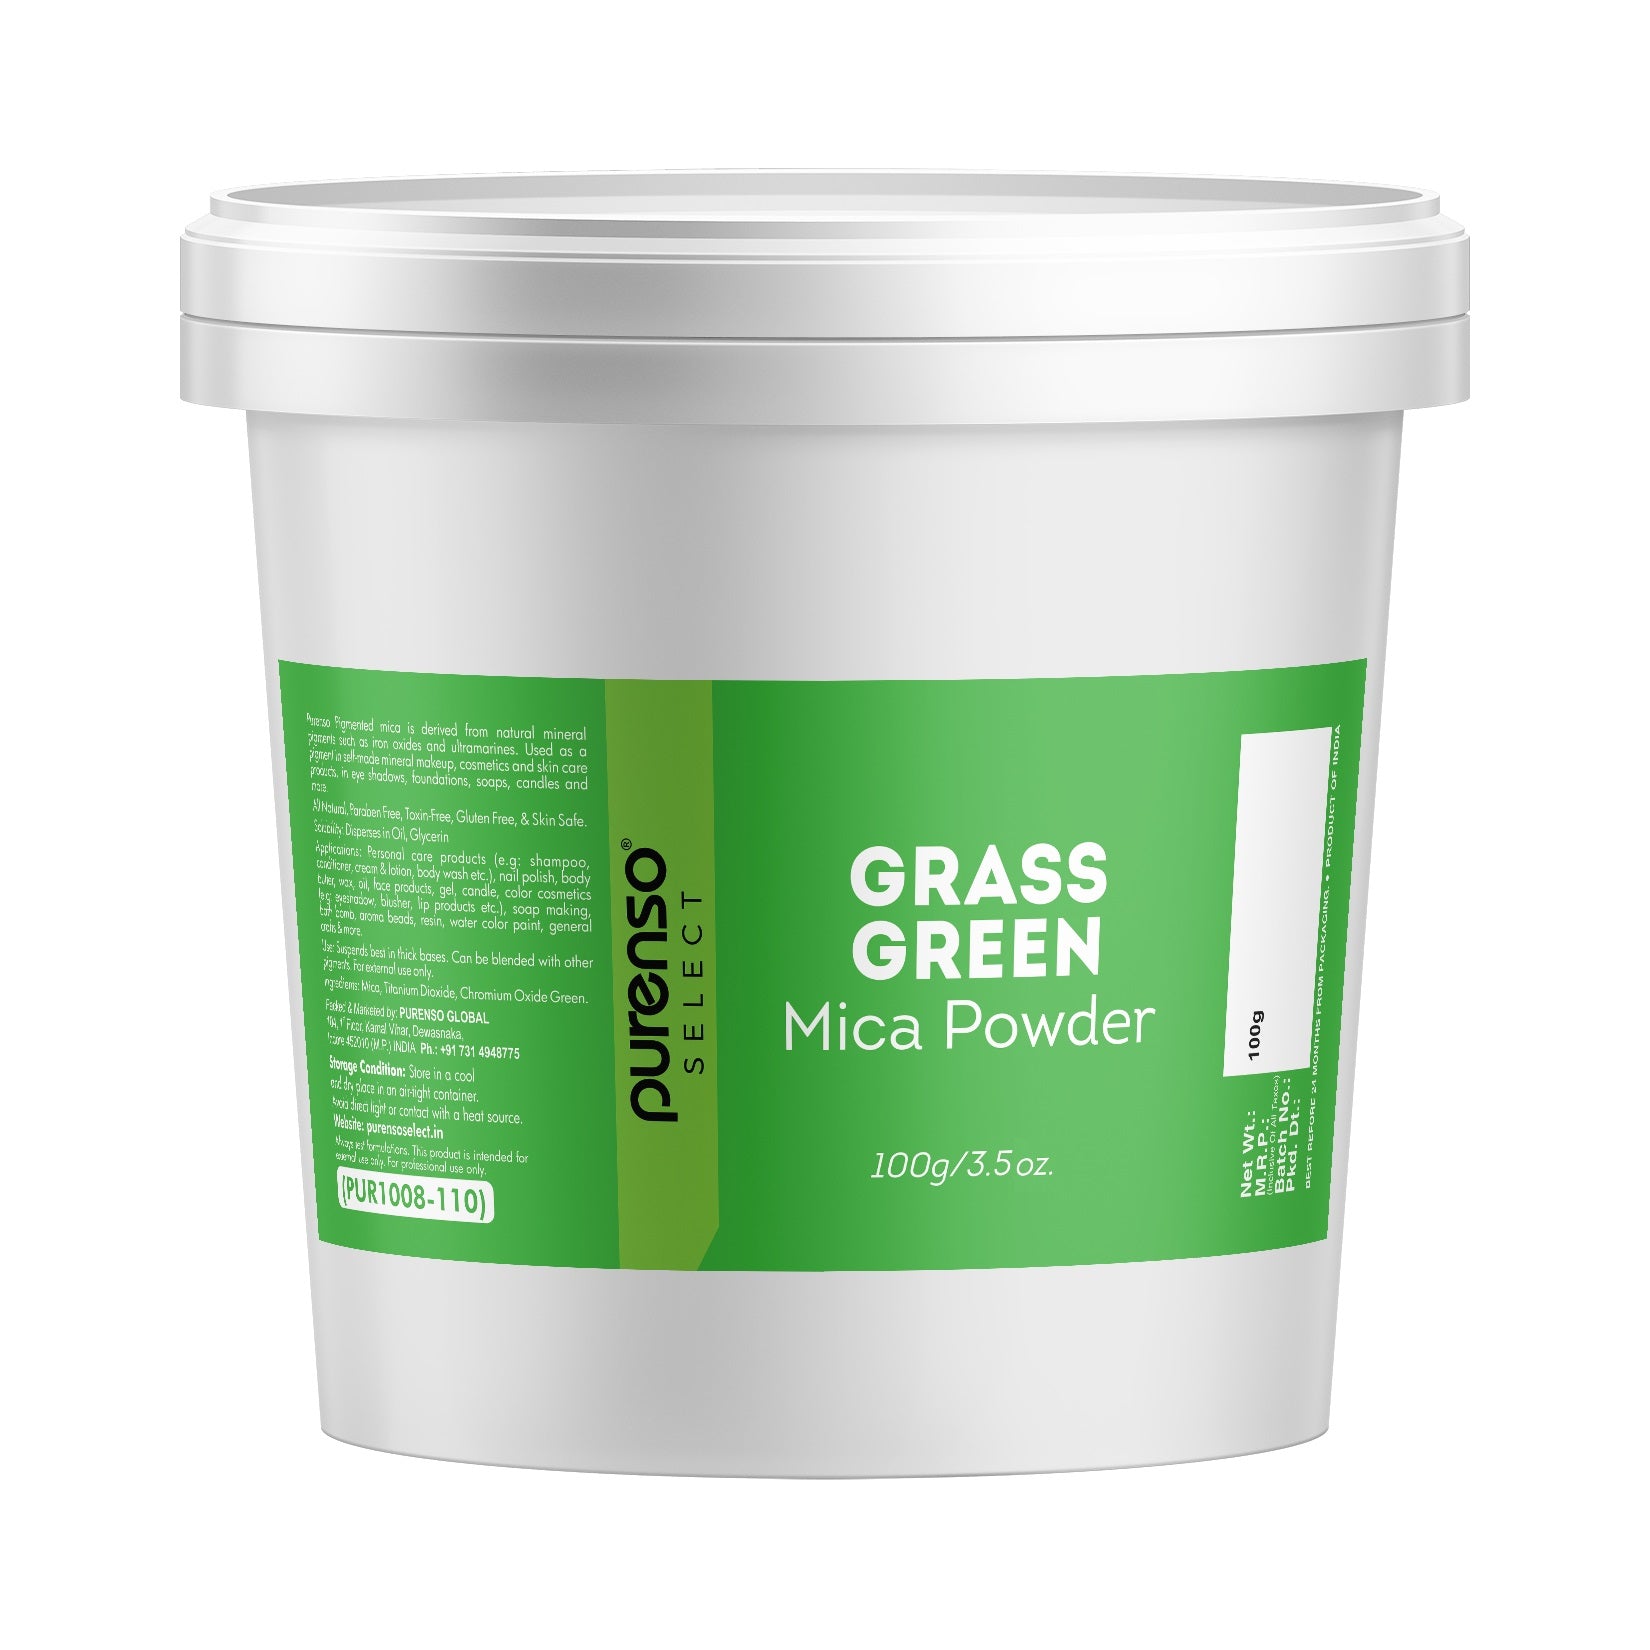 Grass Green Mica Powder